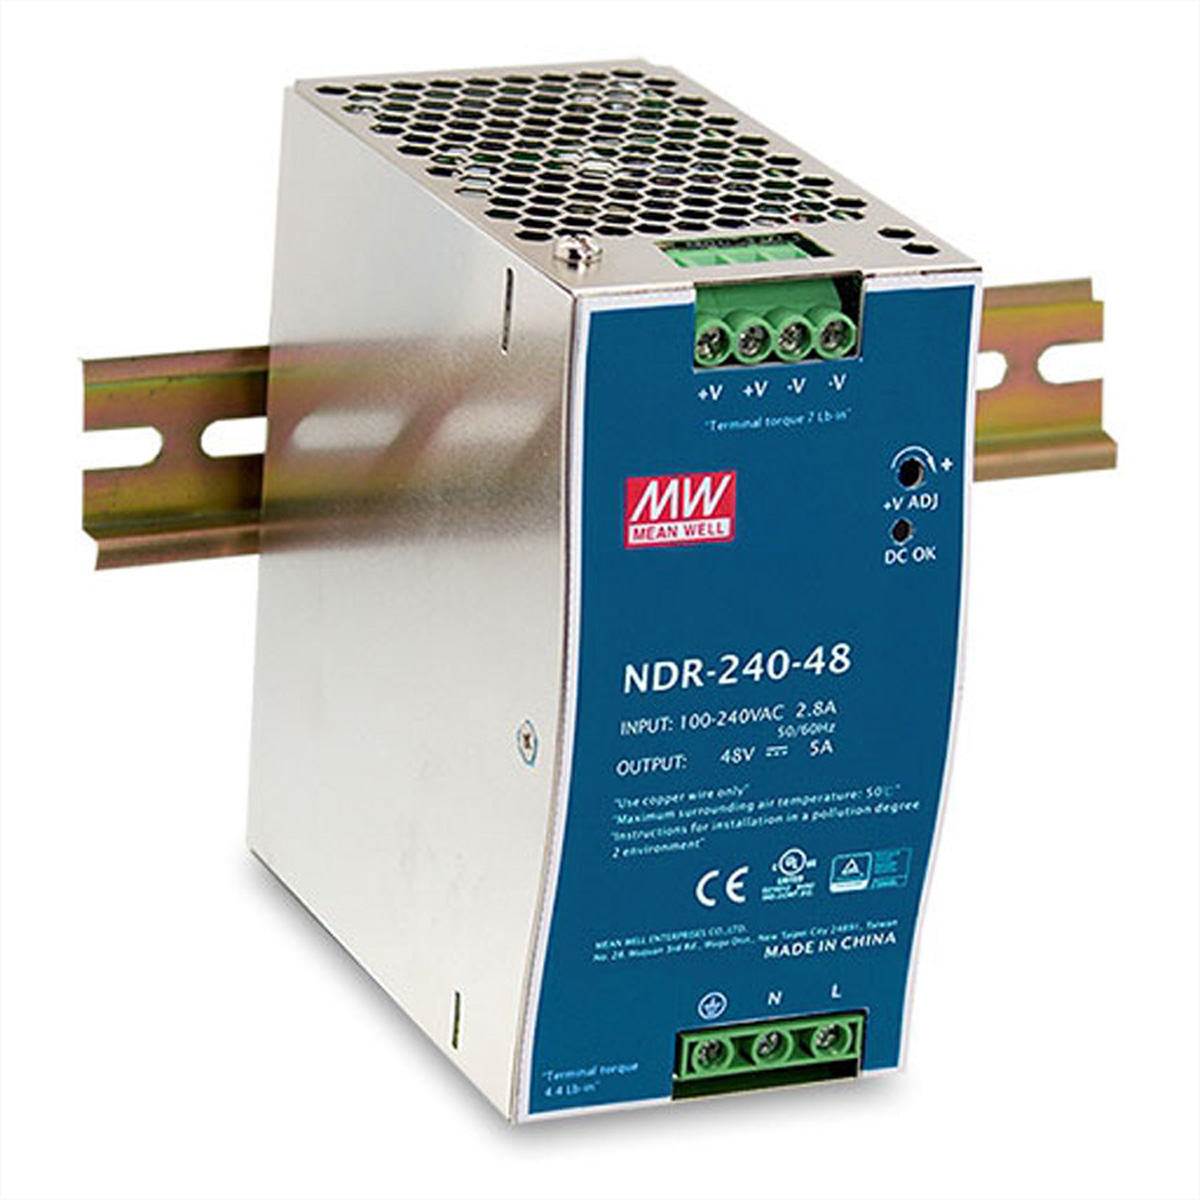 Rail DIN Industrial D-LINK DIS-N480-48 Netzteil Watt 480 480W externes Netzteil